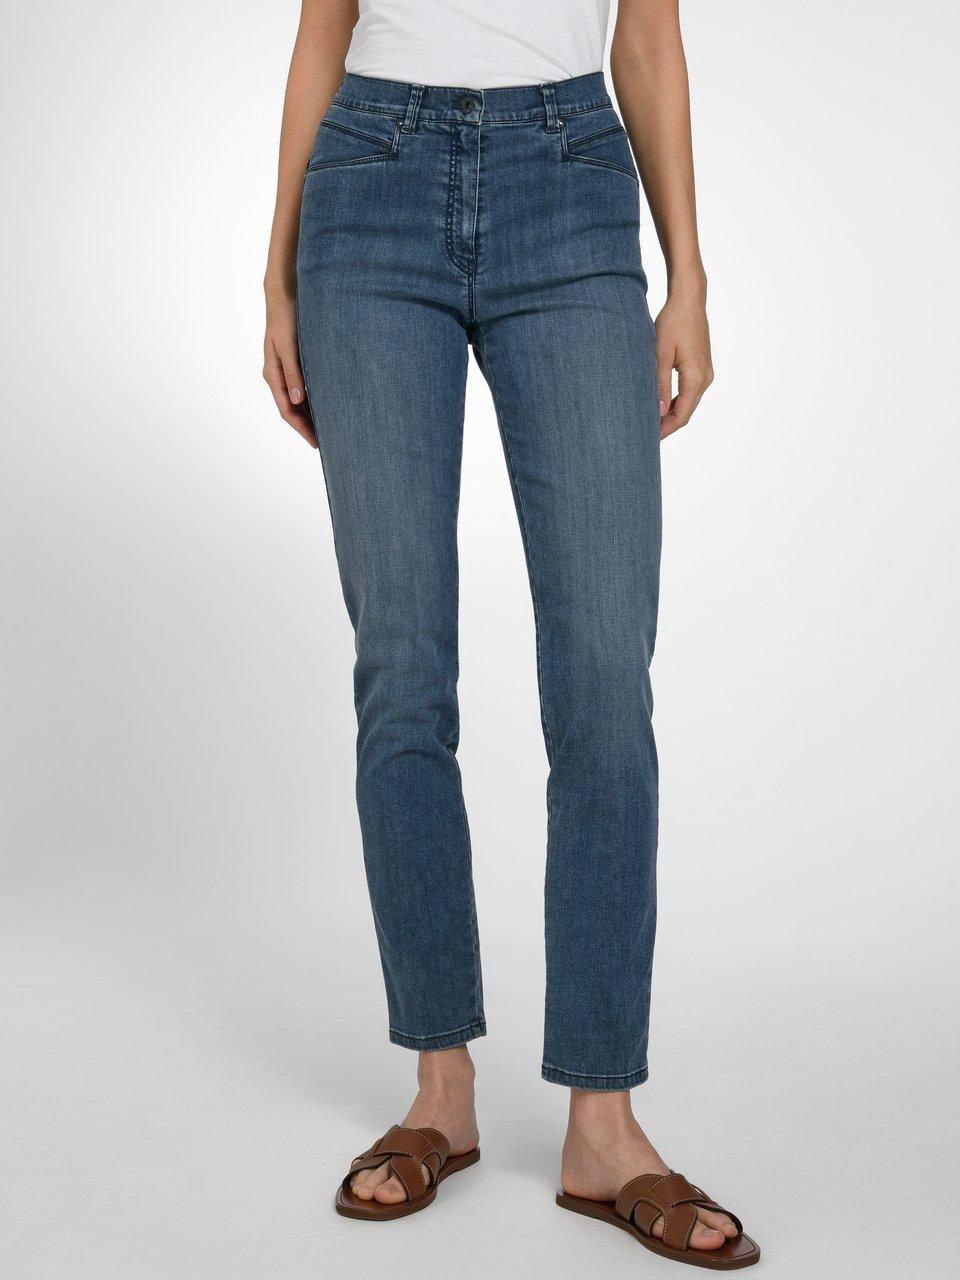 Comfort Brax - Modell Plus-Zauber-Jeans blue Raphaela denim Caren - Dark by